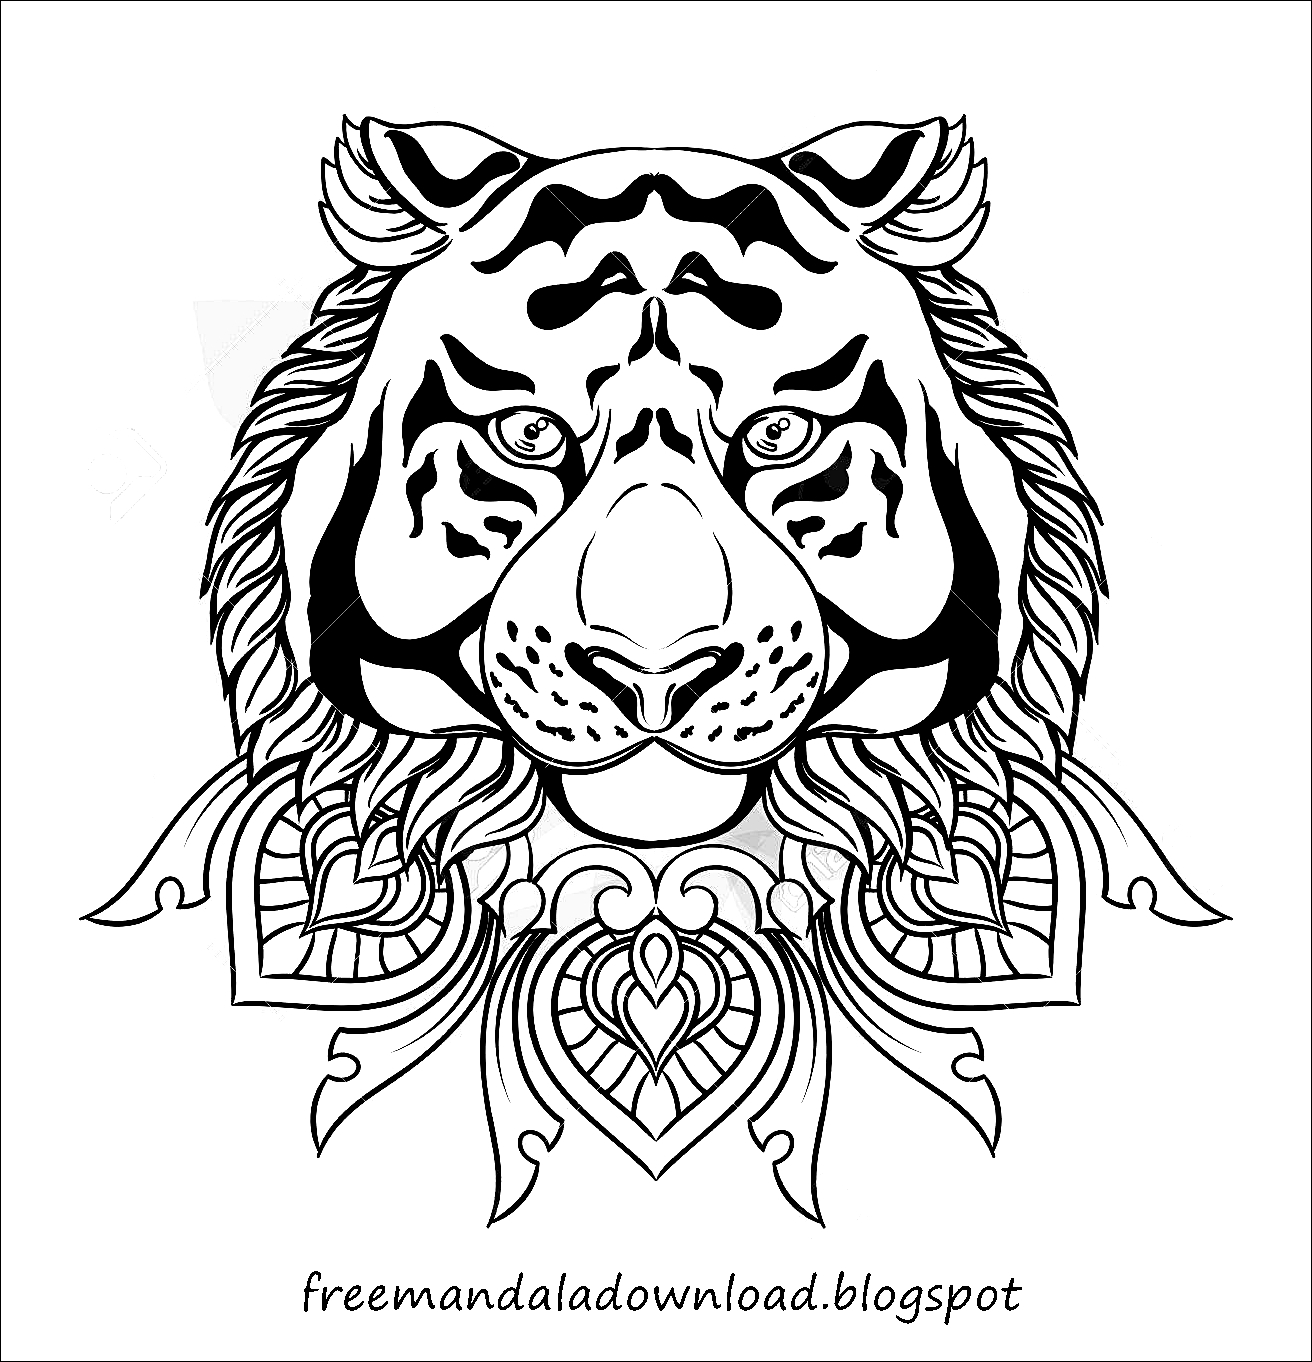 Download Vector Tiger Mandala Download - Free Mandala